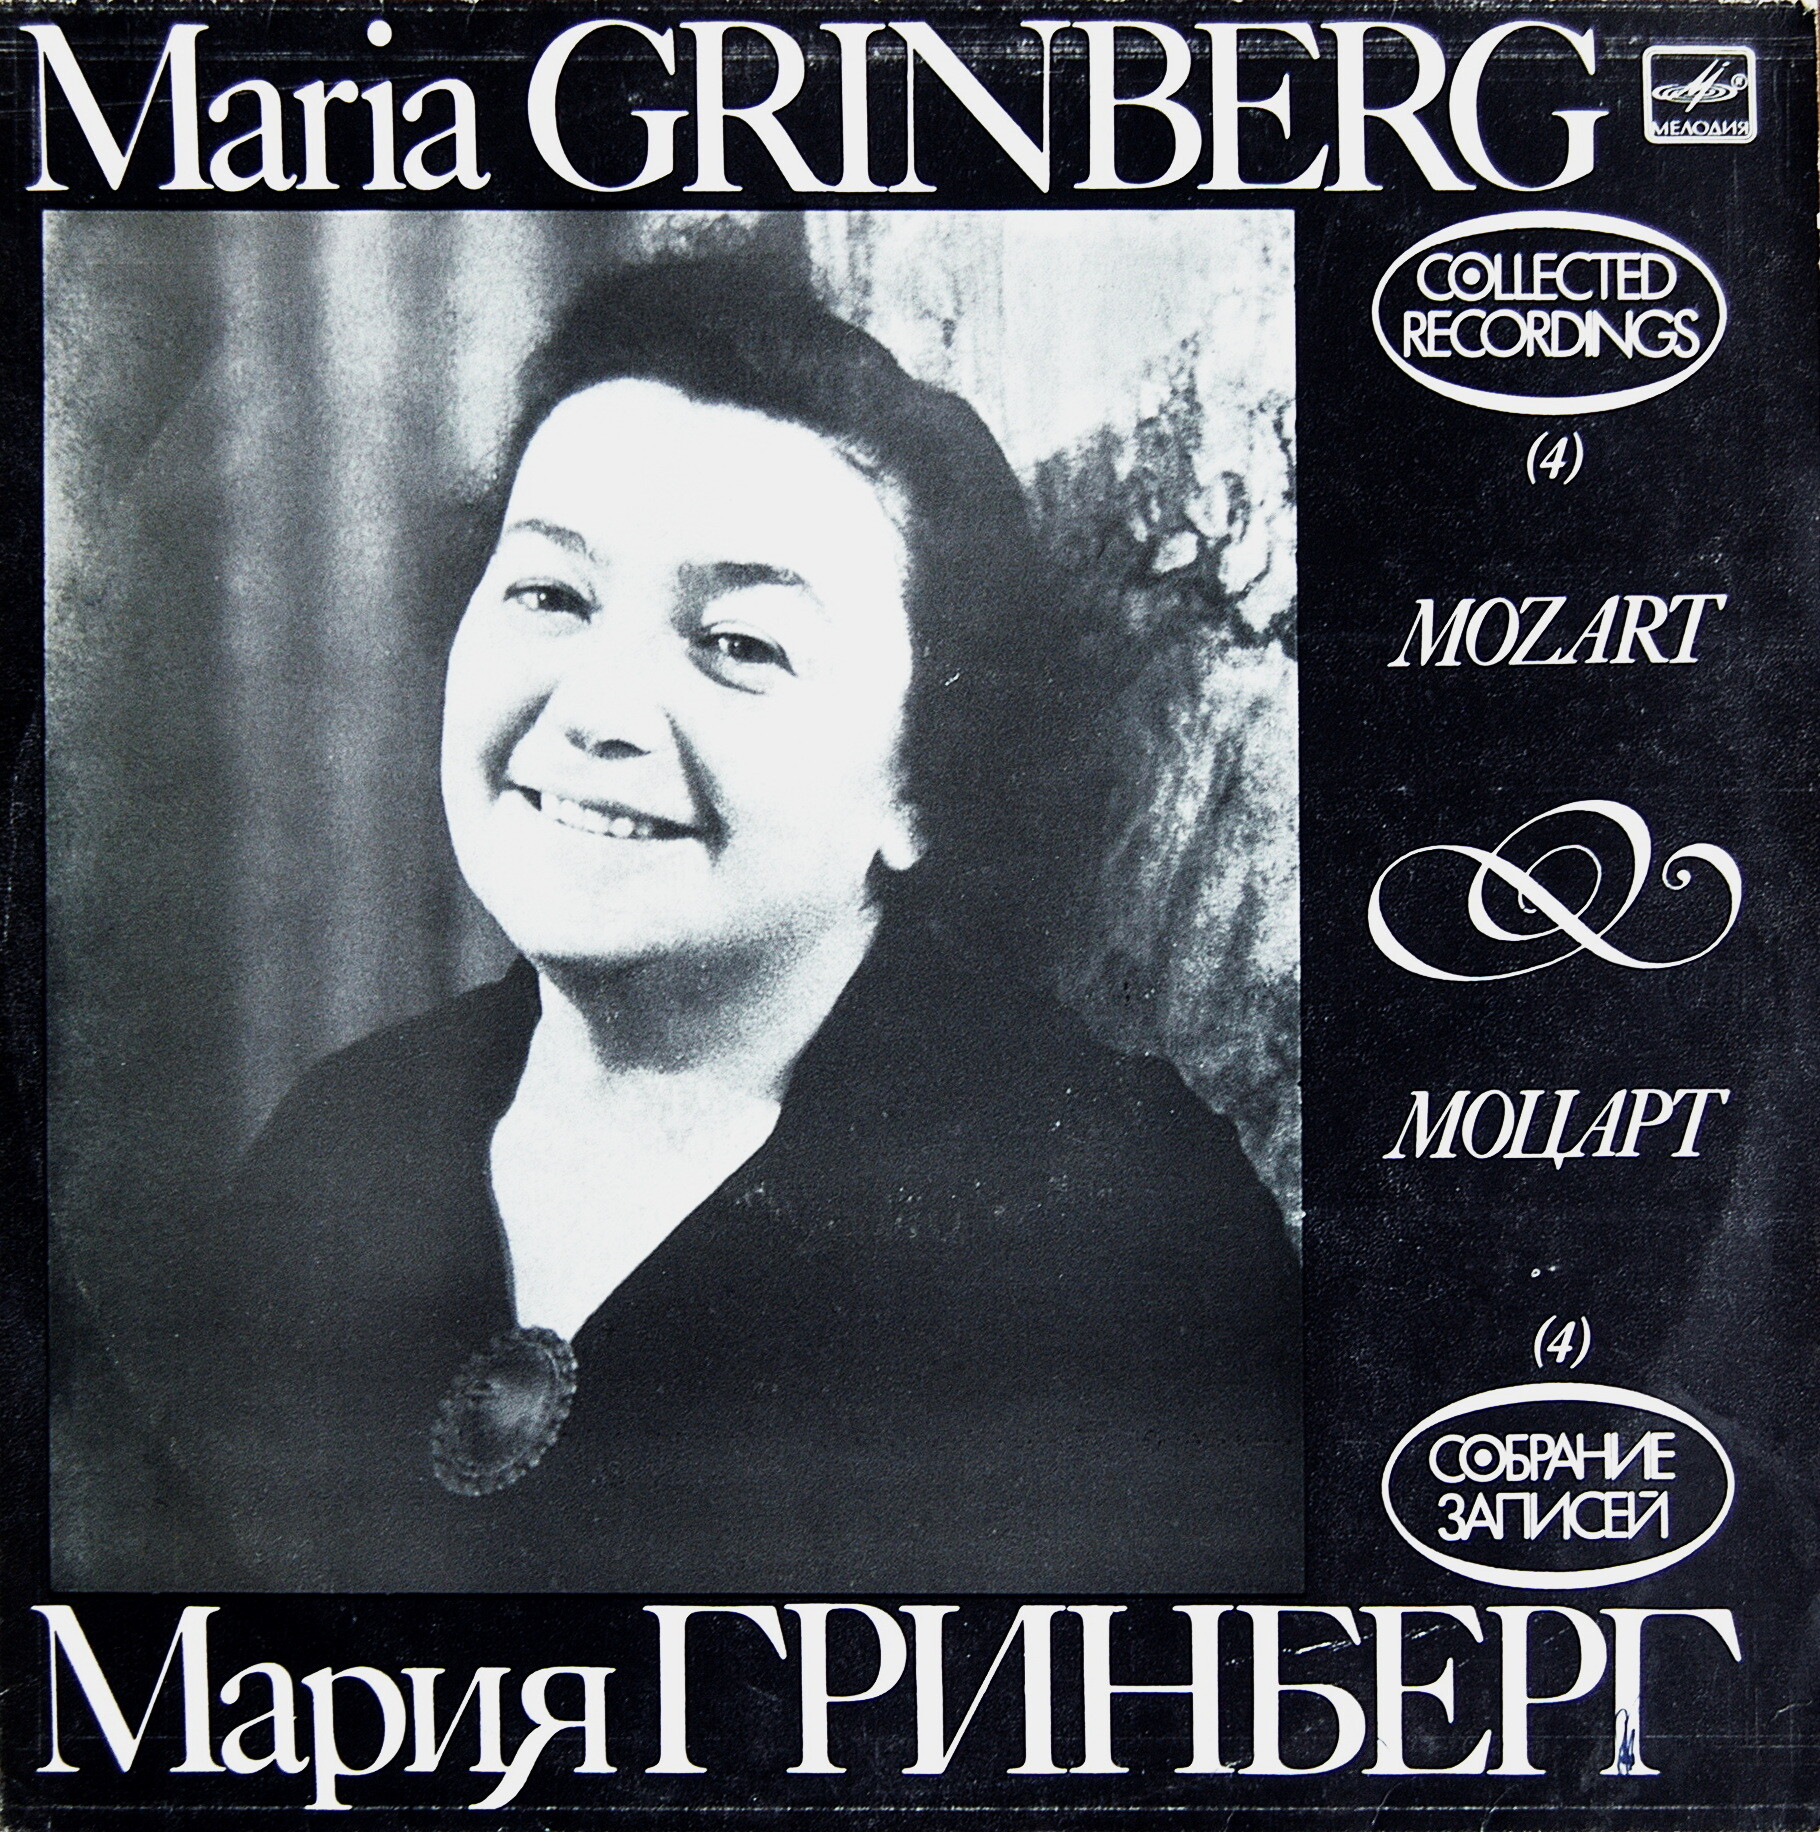 Мария ГРИНБЕРГ (ф-но). Собрание записей (4)